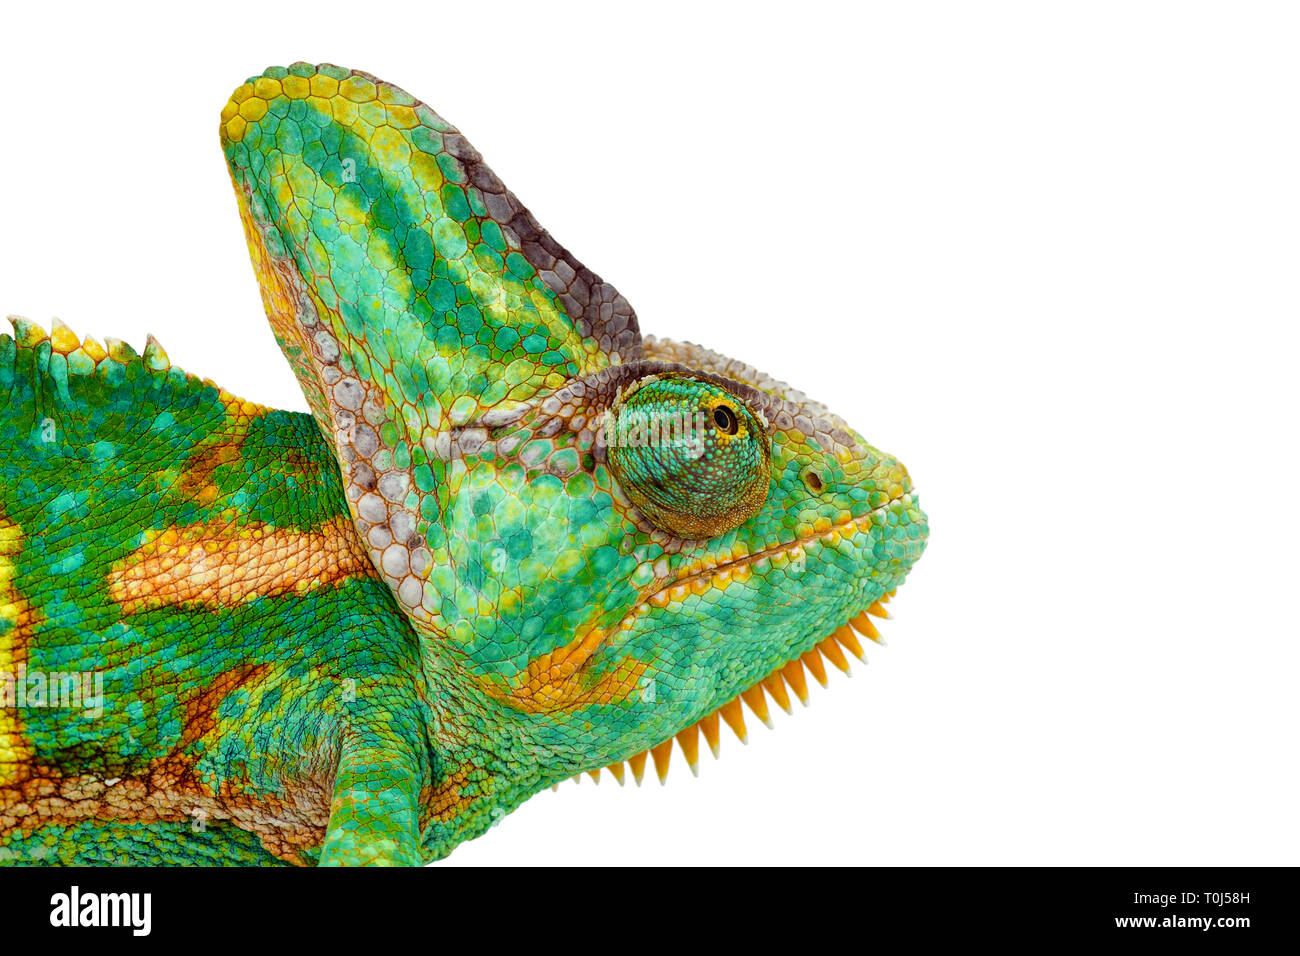 Chiudere la vista di un bel verde colorato chamaeleo calyptratus testa guardando verso l'alto. Specie chiamato anche velato, cono-testa o yemen chameleon. Foto Stock